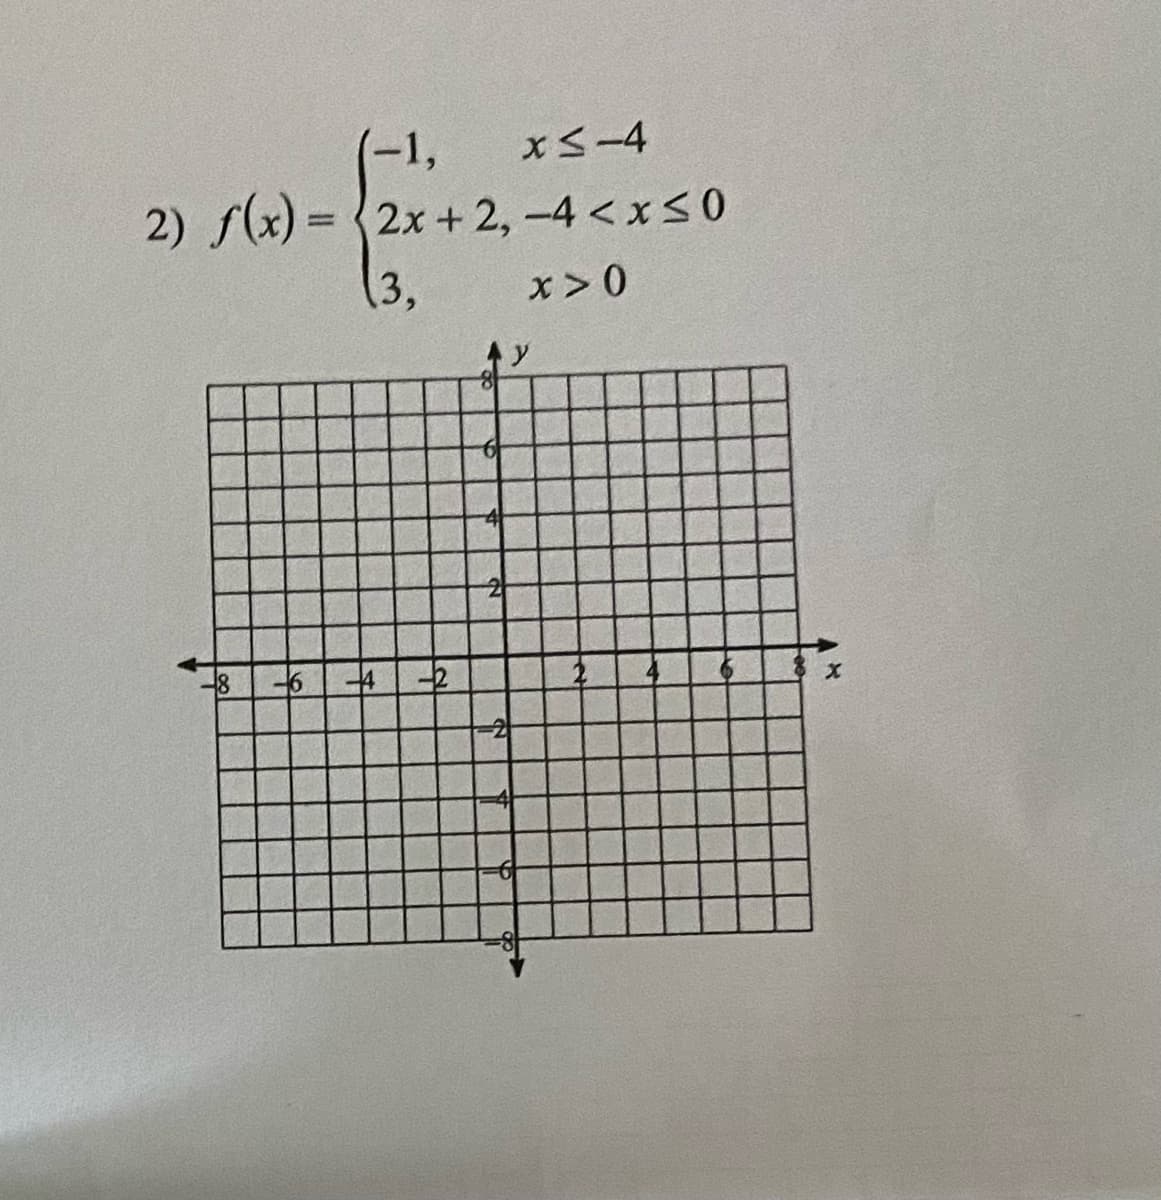 (-1,
xS-4
2) f(x) = {2x + 2,-4 < xS0
%3D
(3,
x > 0
-4
